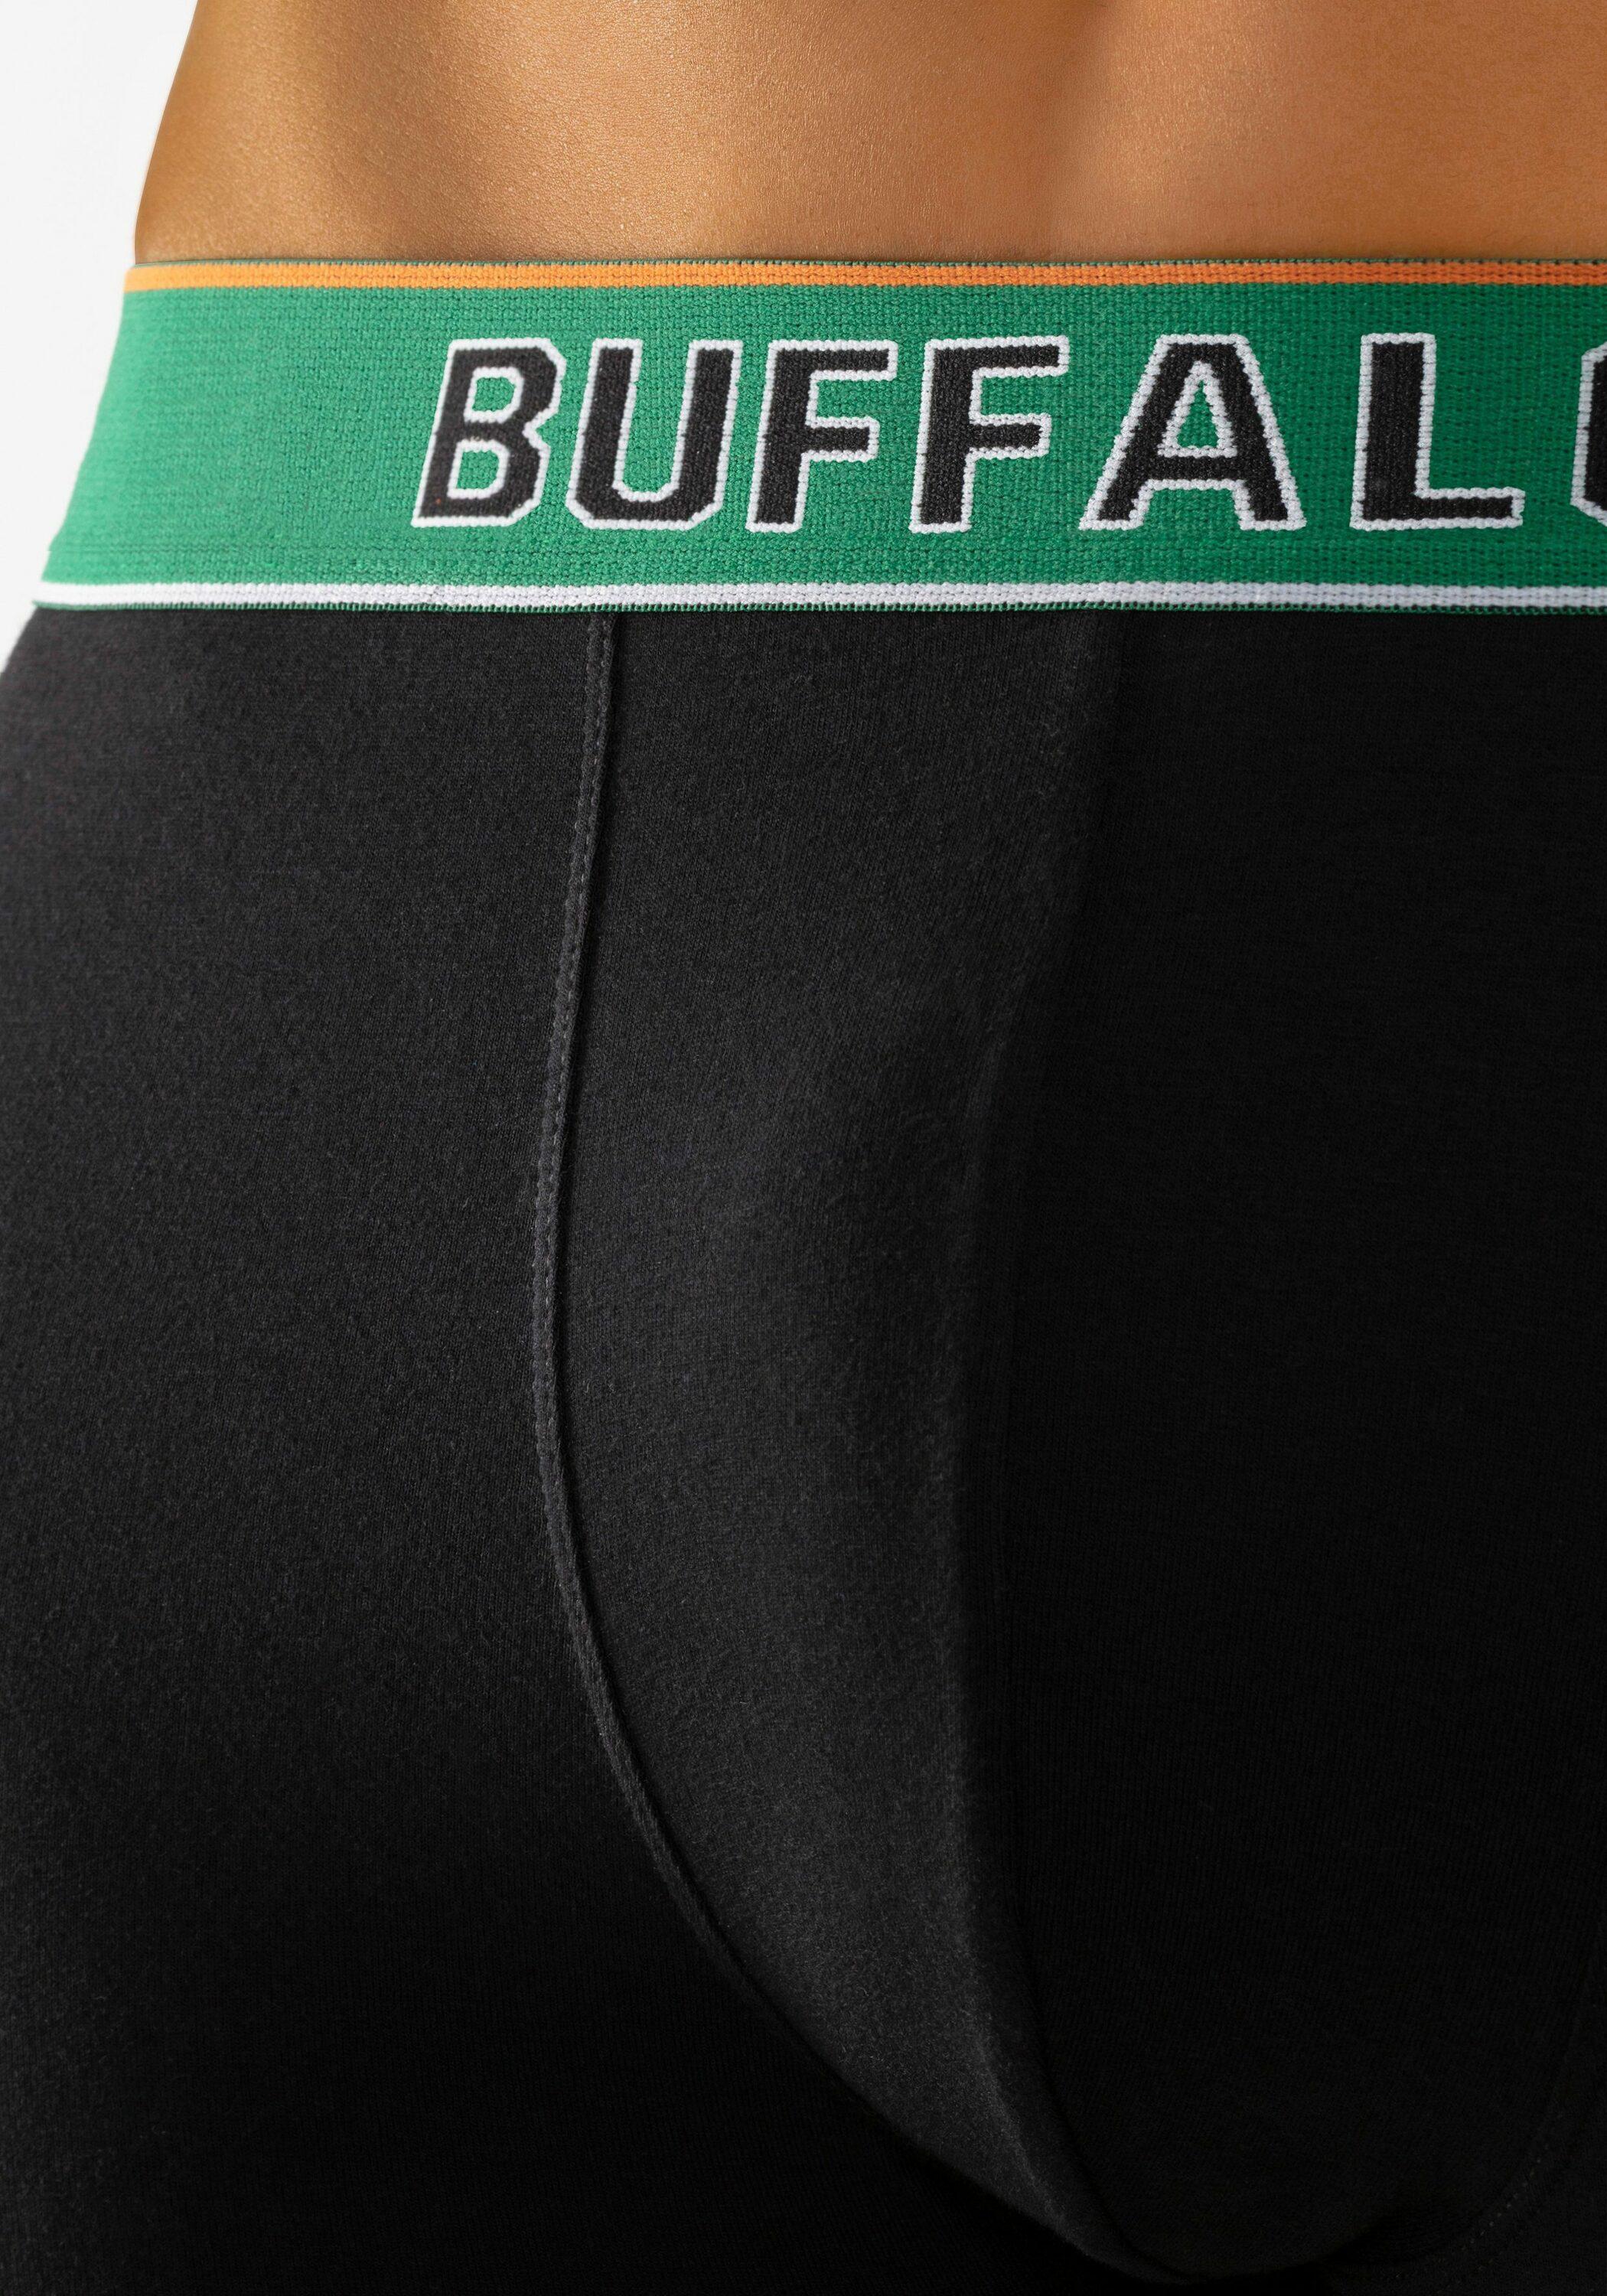 Buffalo Unterhose Herren schwarz-navy, schwarz, schwarz-grün im Online Shop  von SportScheck kaufen